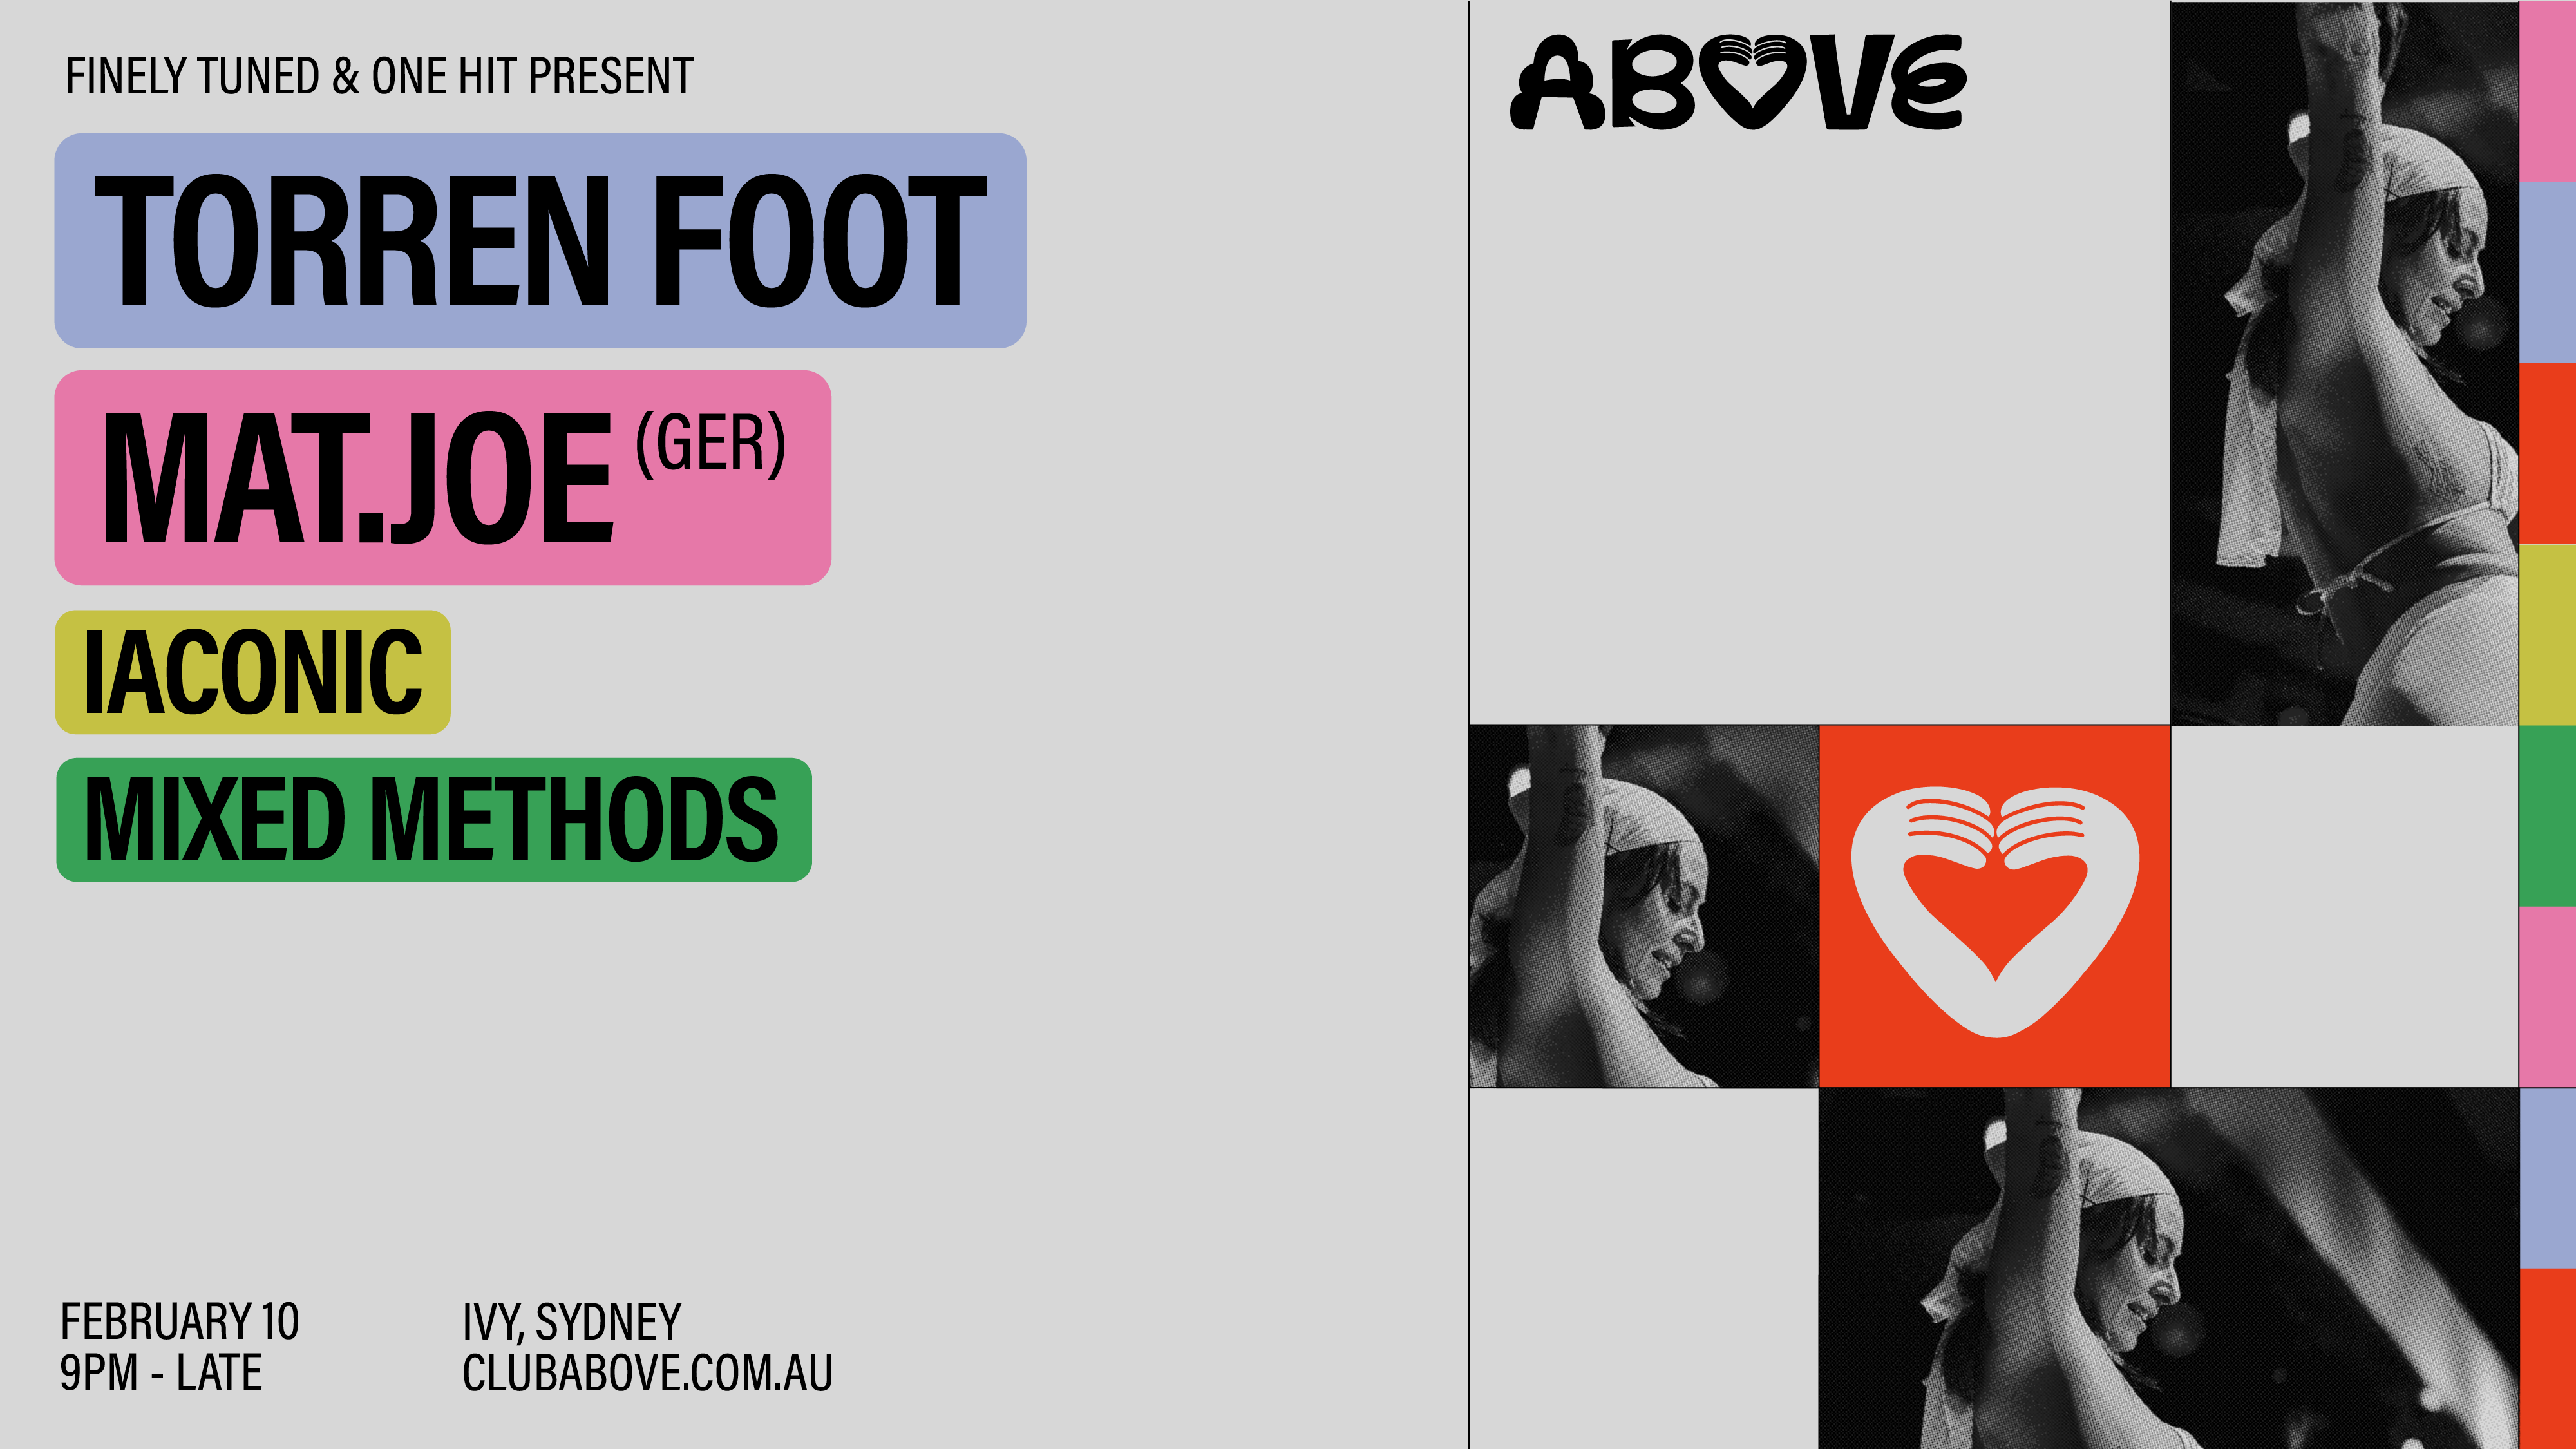 Above — February 10 feat. Torren Foot & Mat.Joe (GER) - フライヤー表